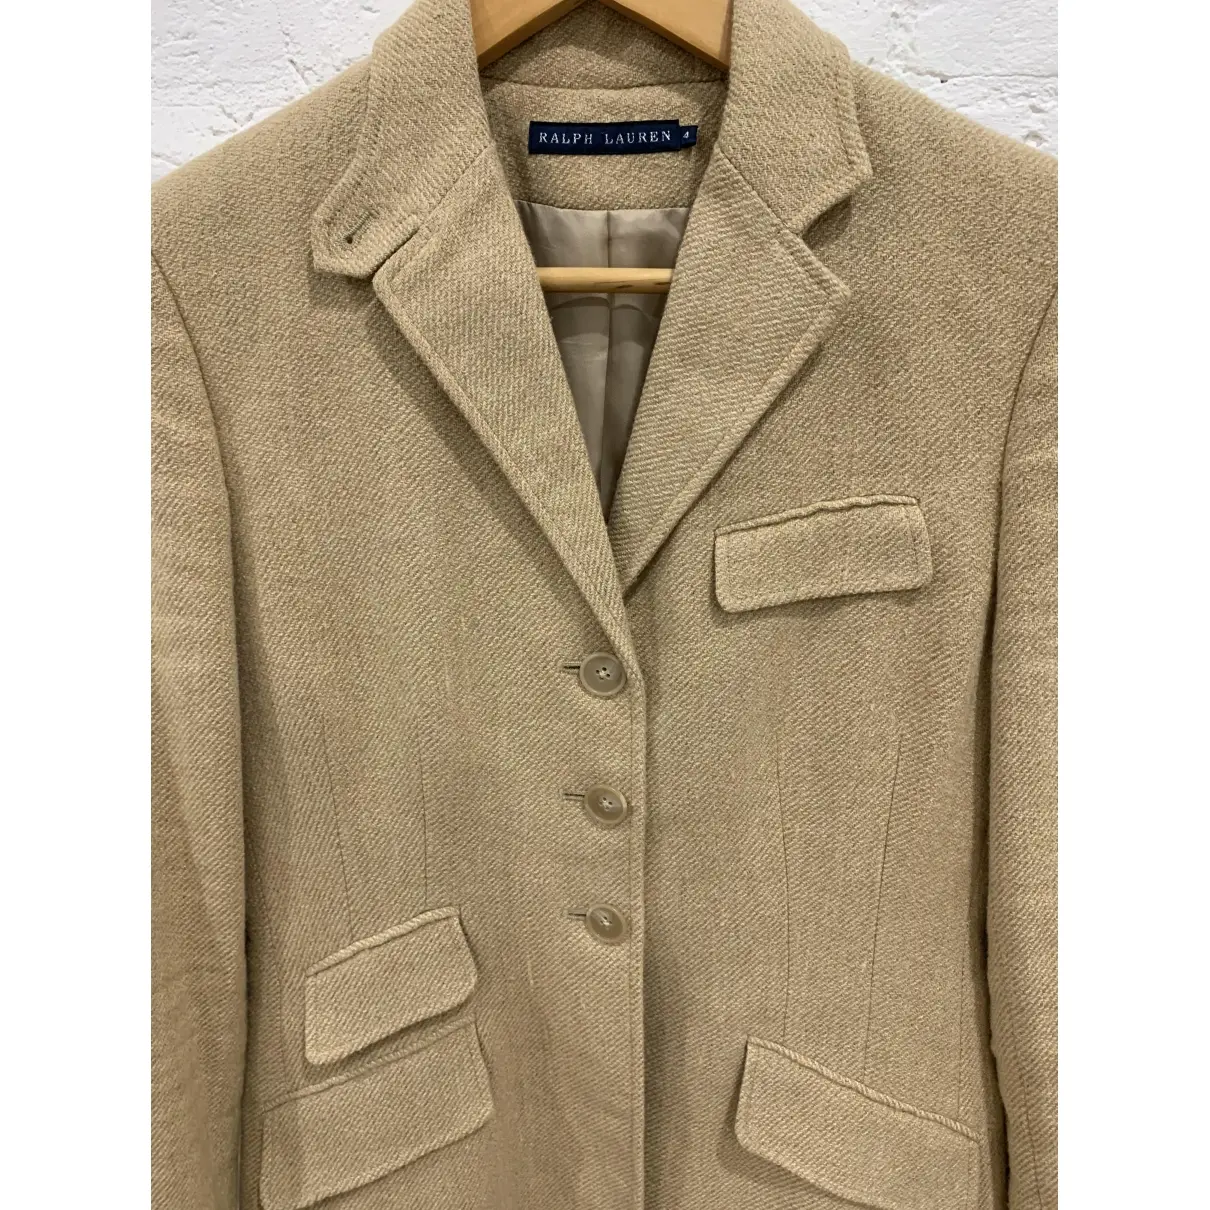 Linen coat Ralph Lauren - Vintage